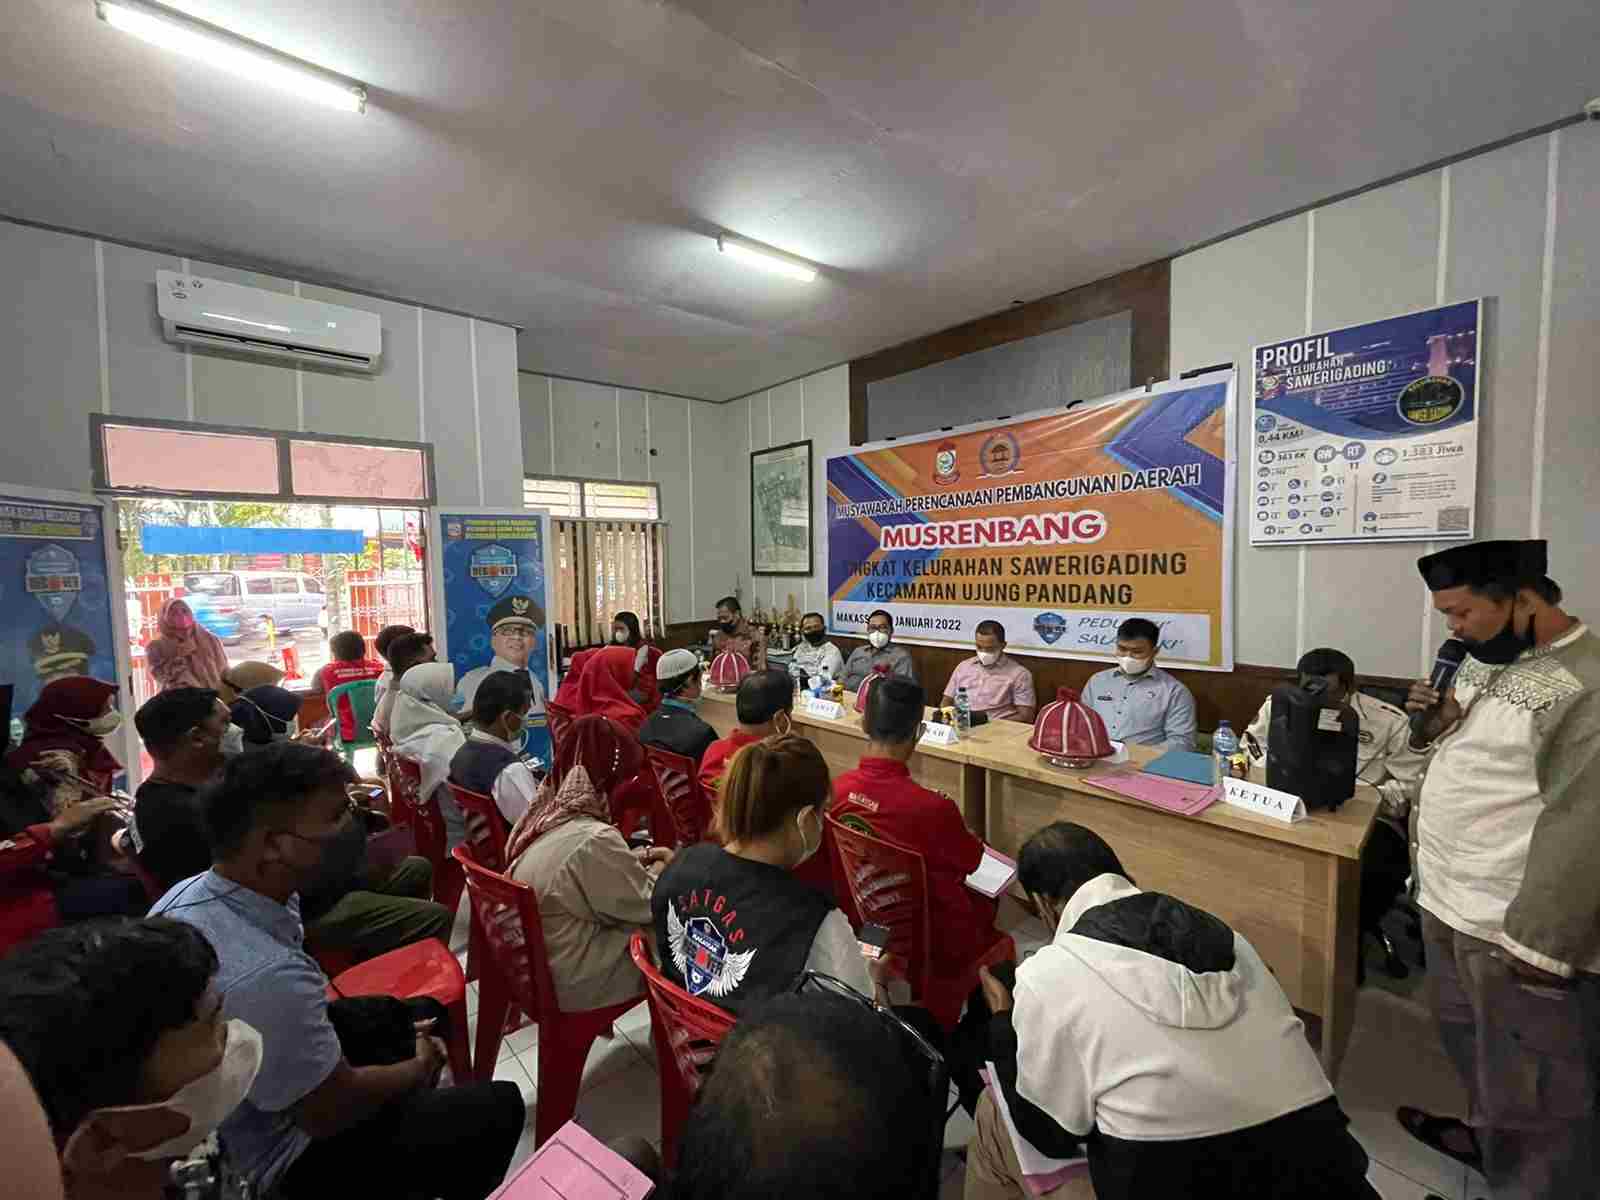 Musrembang Kelurahan Sawerigading, Sekcam Ujung Pandang: Usulan Prioritas Diakomodir